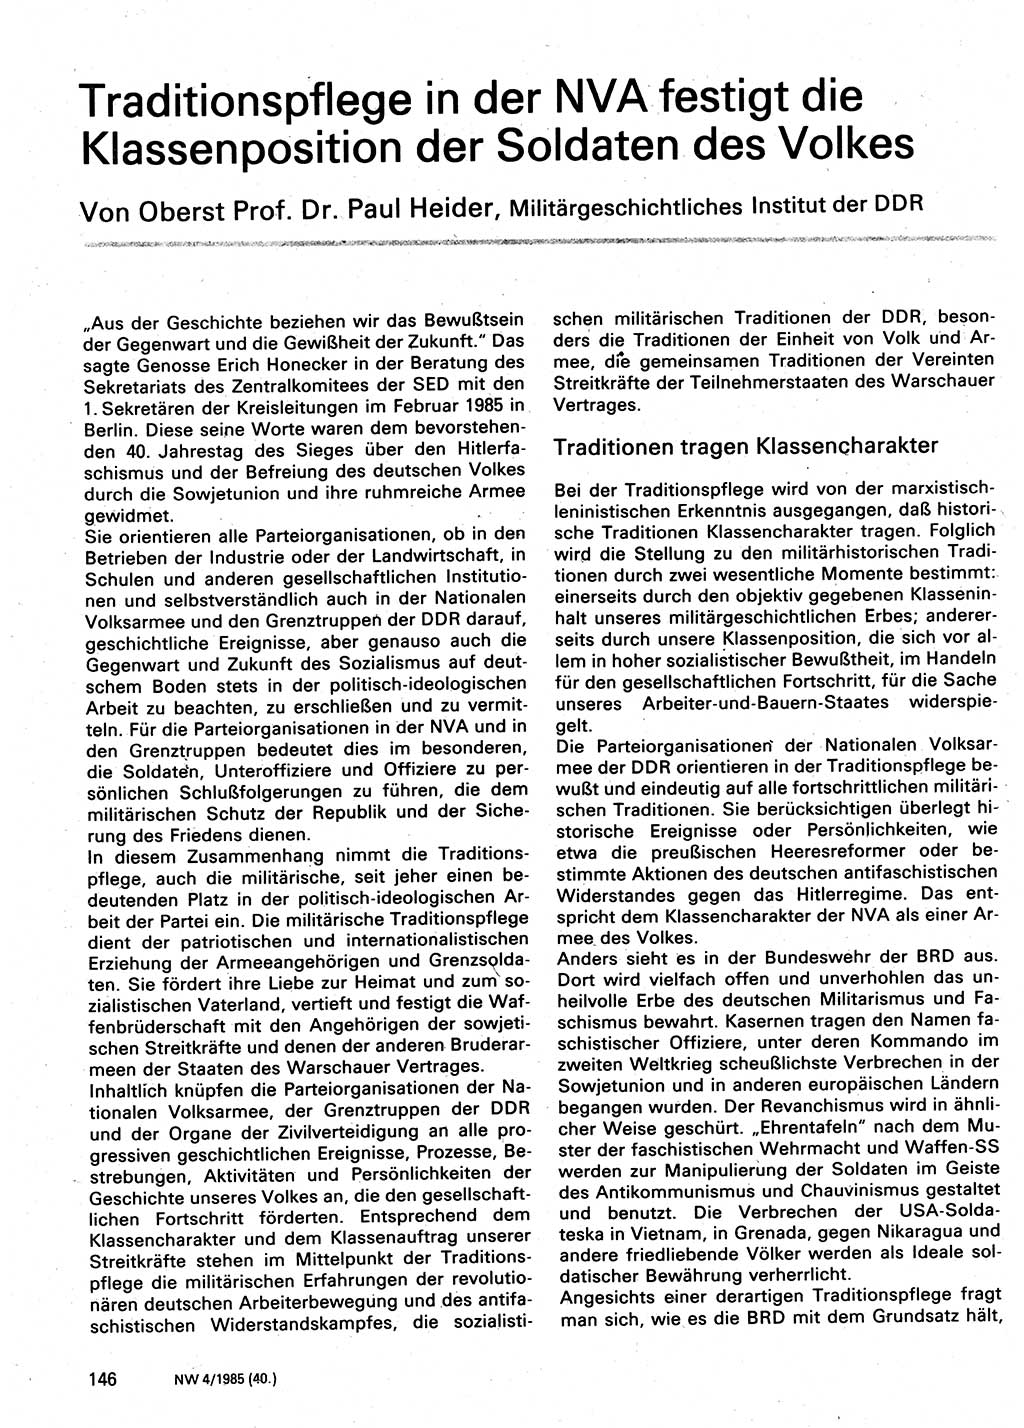 Neuer Weg (NW), Organ des Zentralkomitees (ZK) der SED (Sozialistische Einheitspartei Deutschlands) für Fragen des Parteilebens, 40. Jahrgang [Deutsche Demokratische Republik (DDR)] 1985, Seite 146 (NW ZK SED DDR 1985, S. 146)